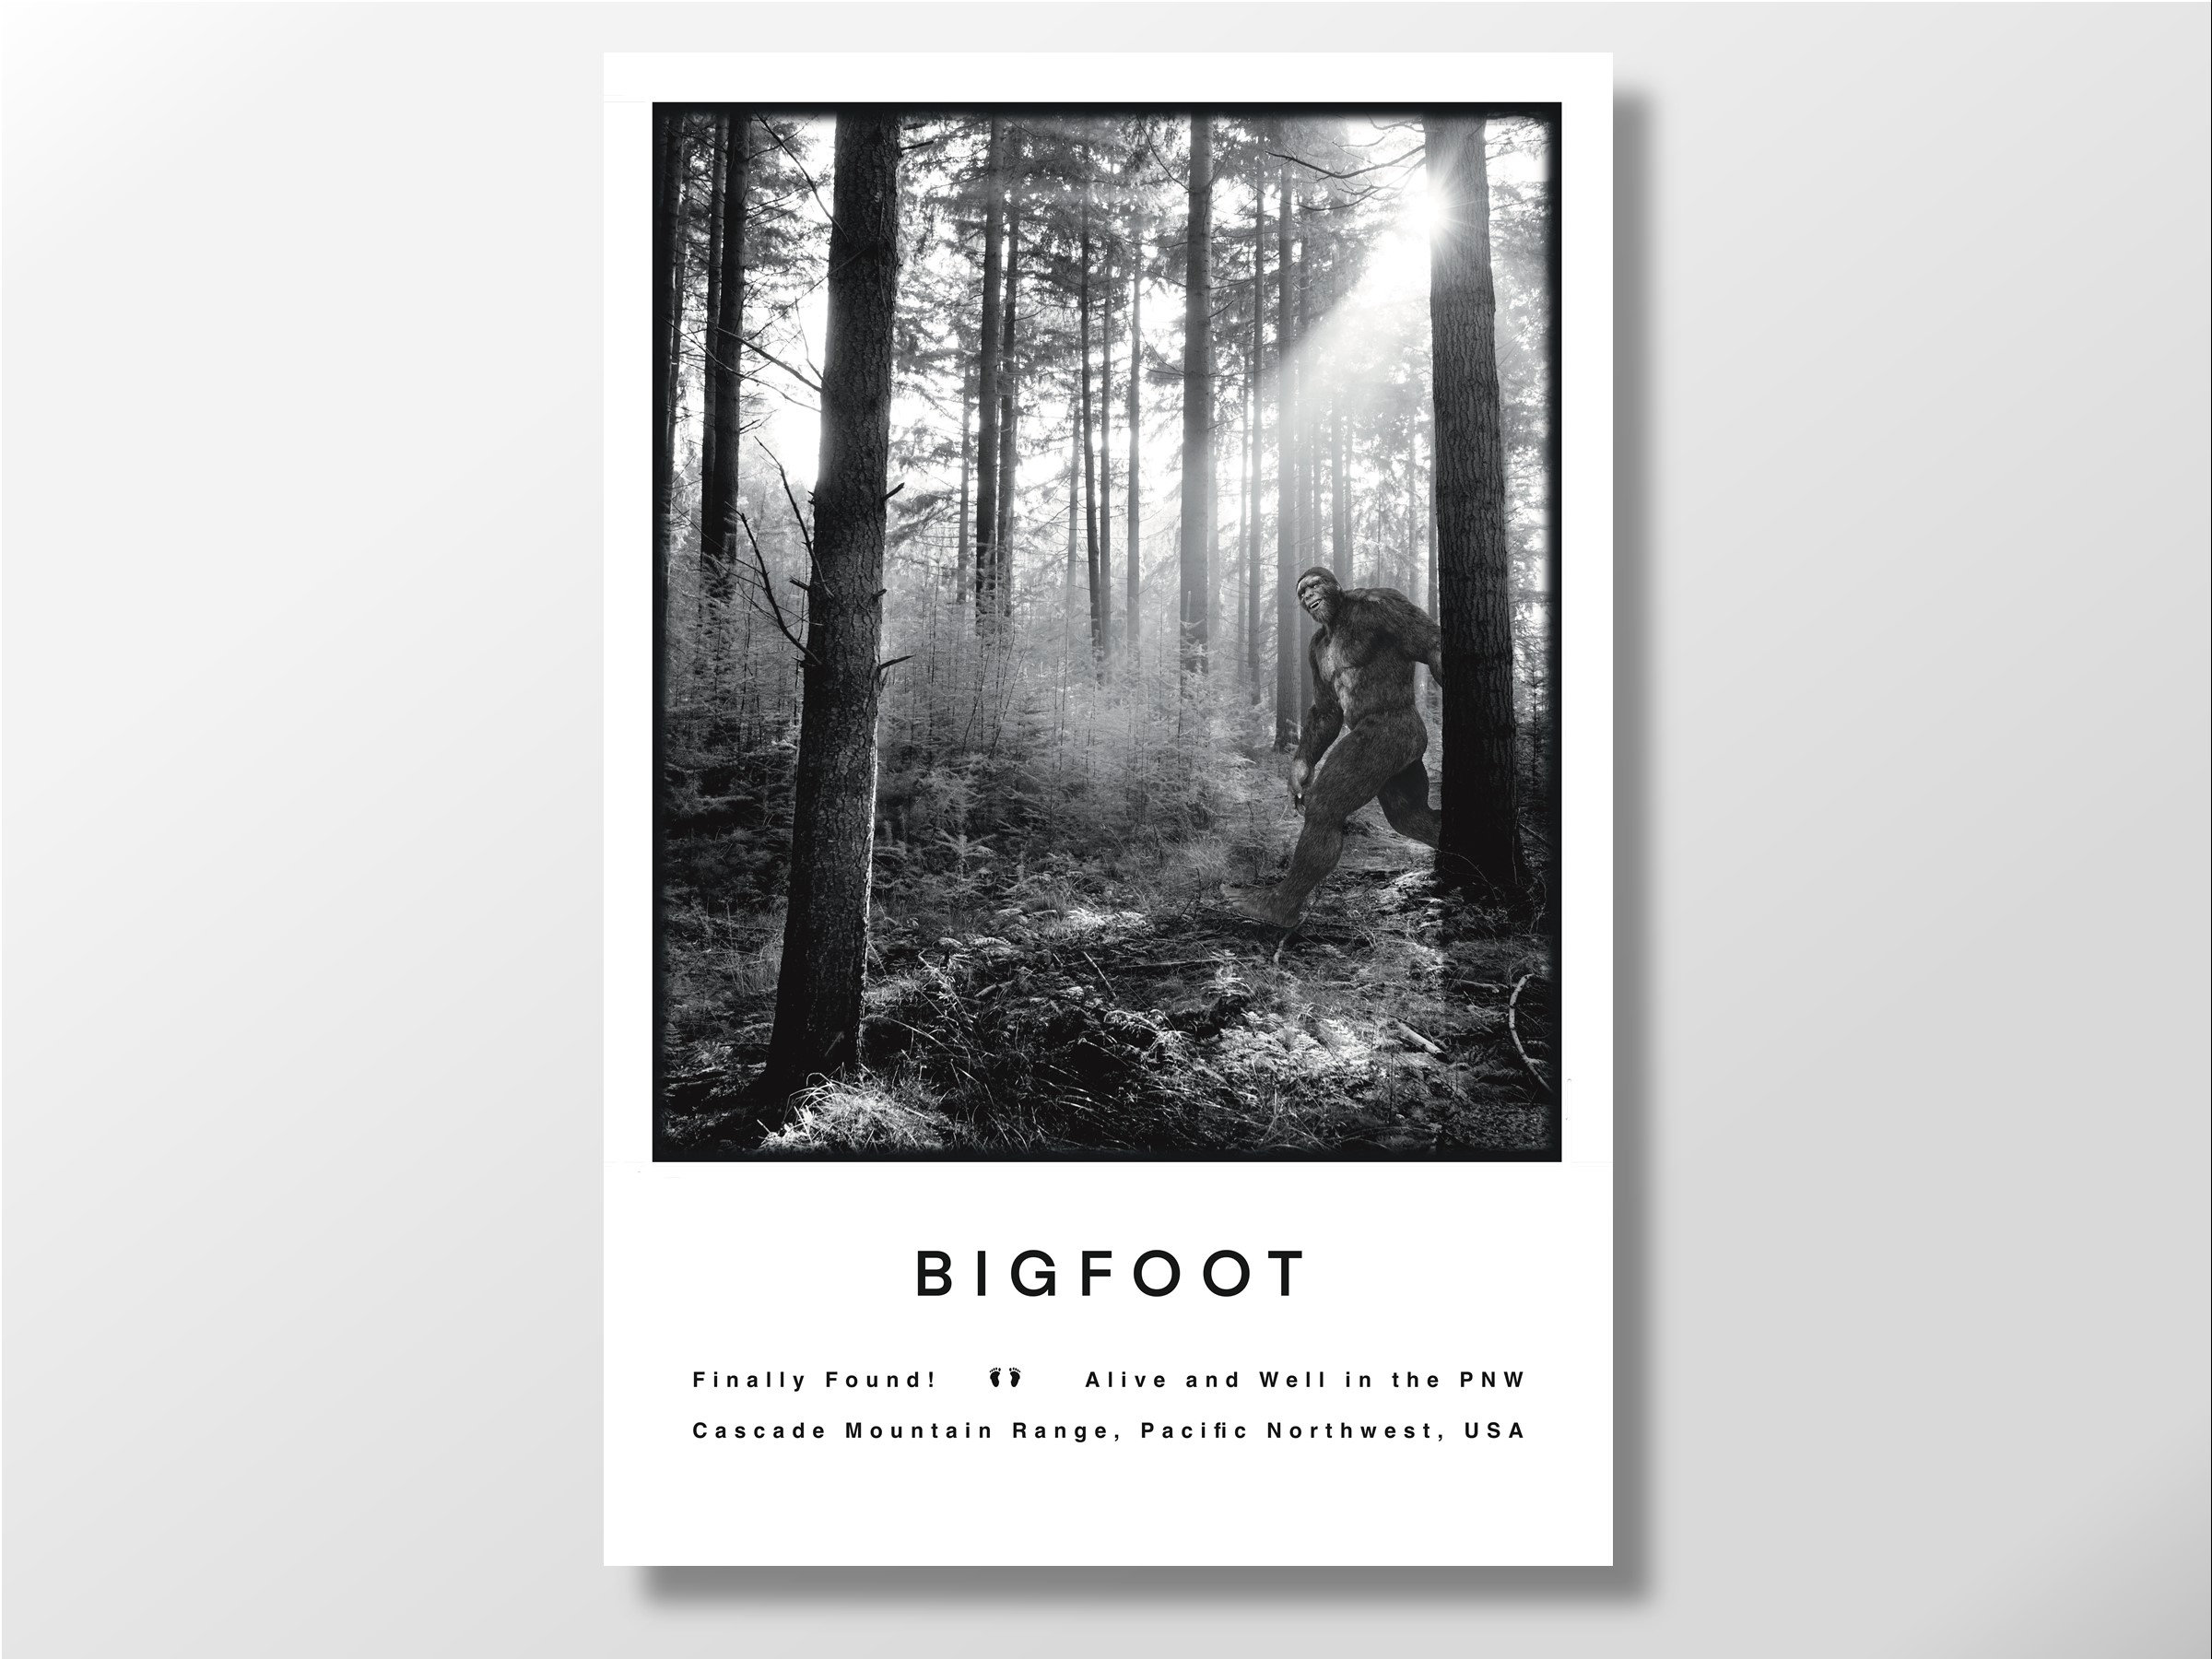 Um pôster de um jogo de bigfoot chamado bigfoot.